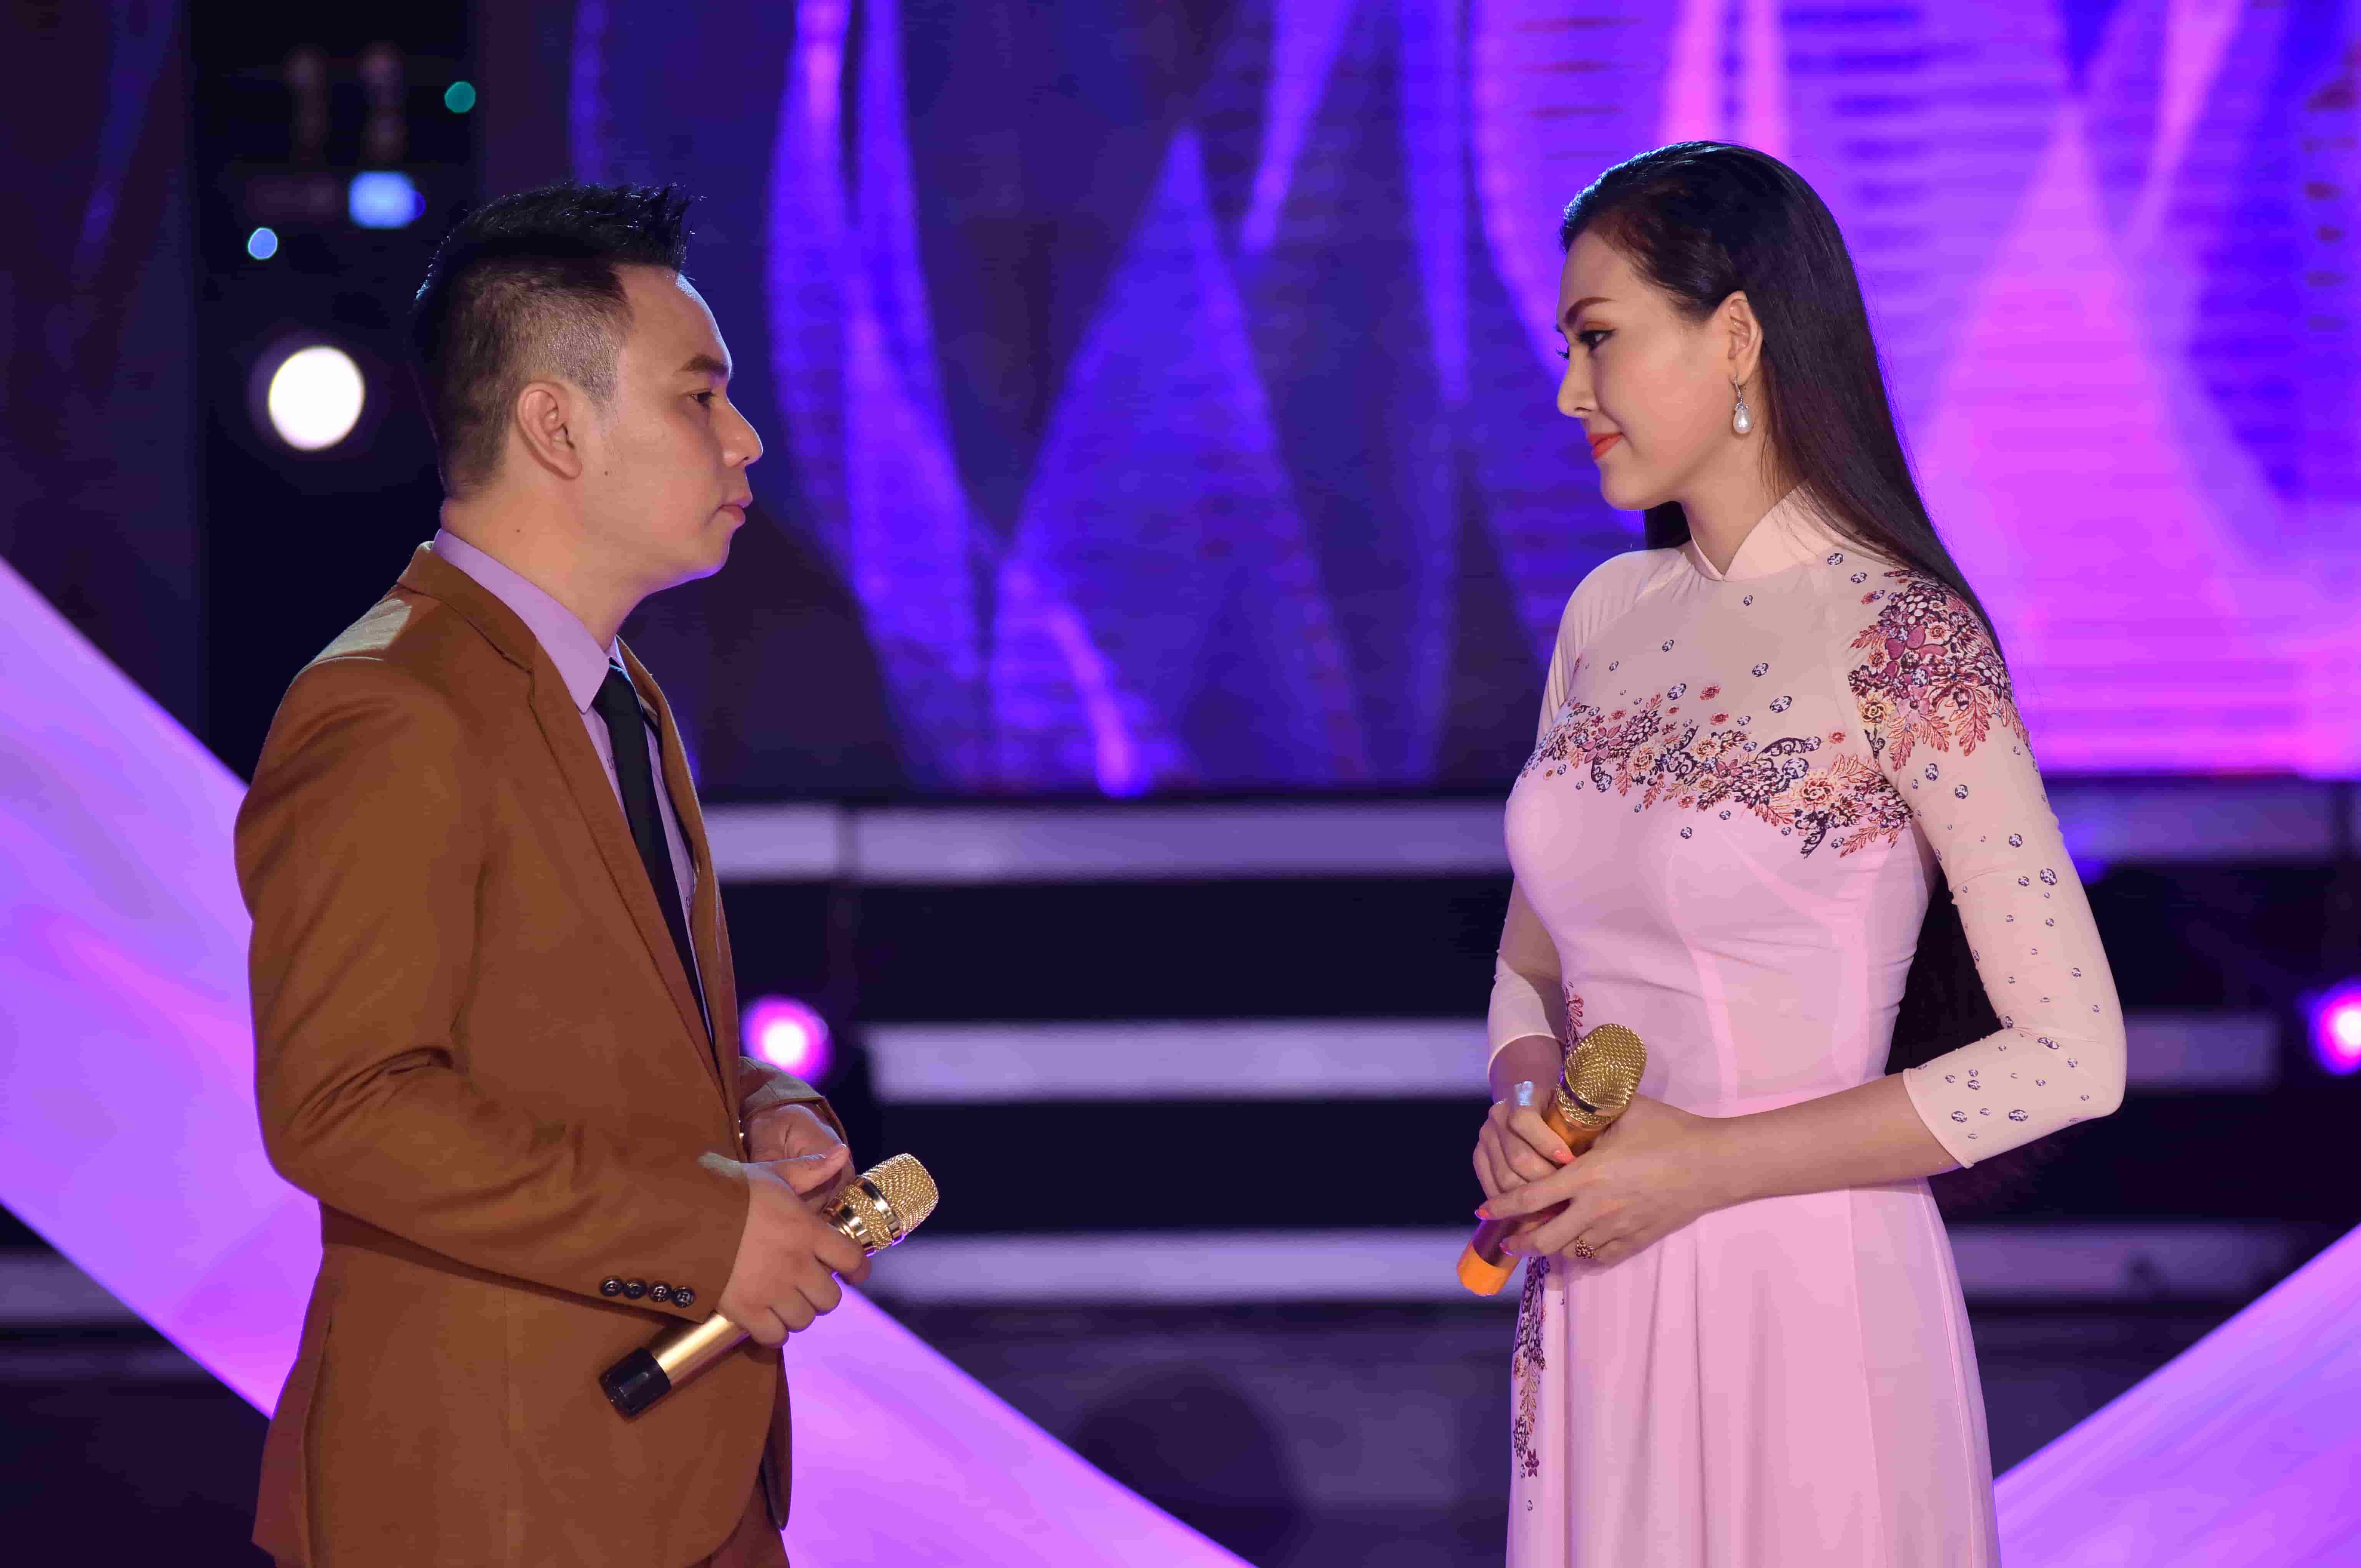 Ca sĩ hoa hậu Kim Thoa và ca sĩ Tài Chí Dũng trên sân khấu